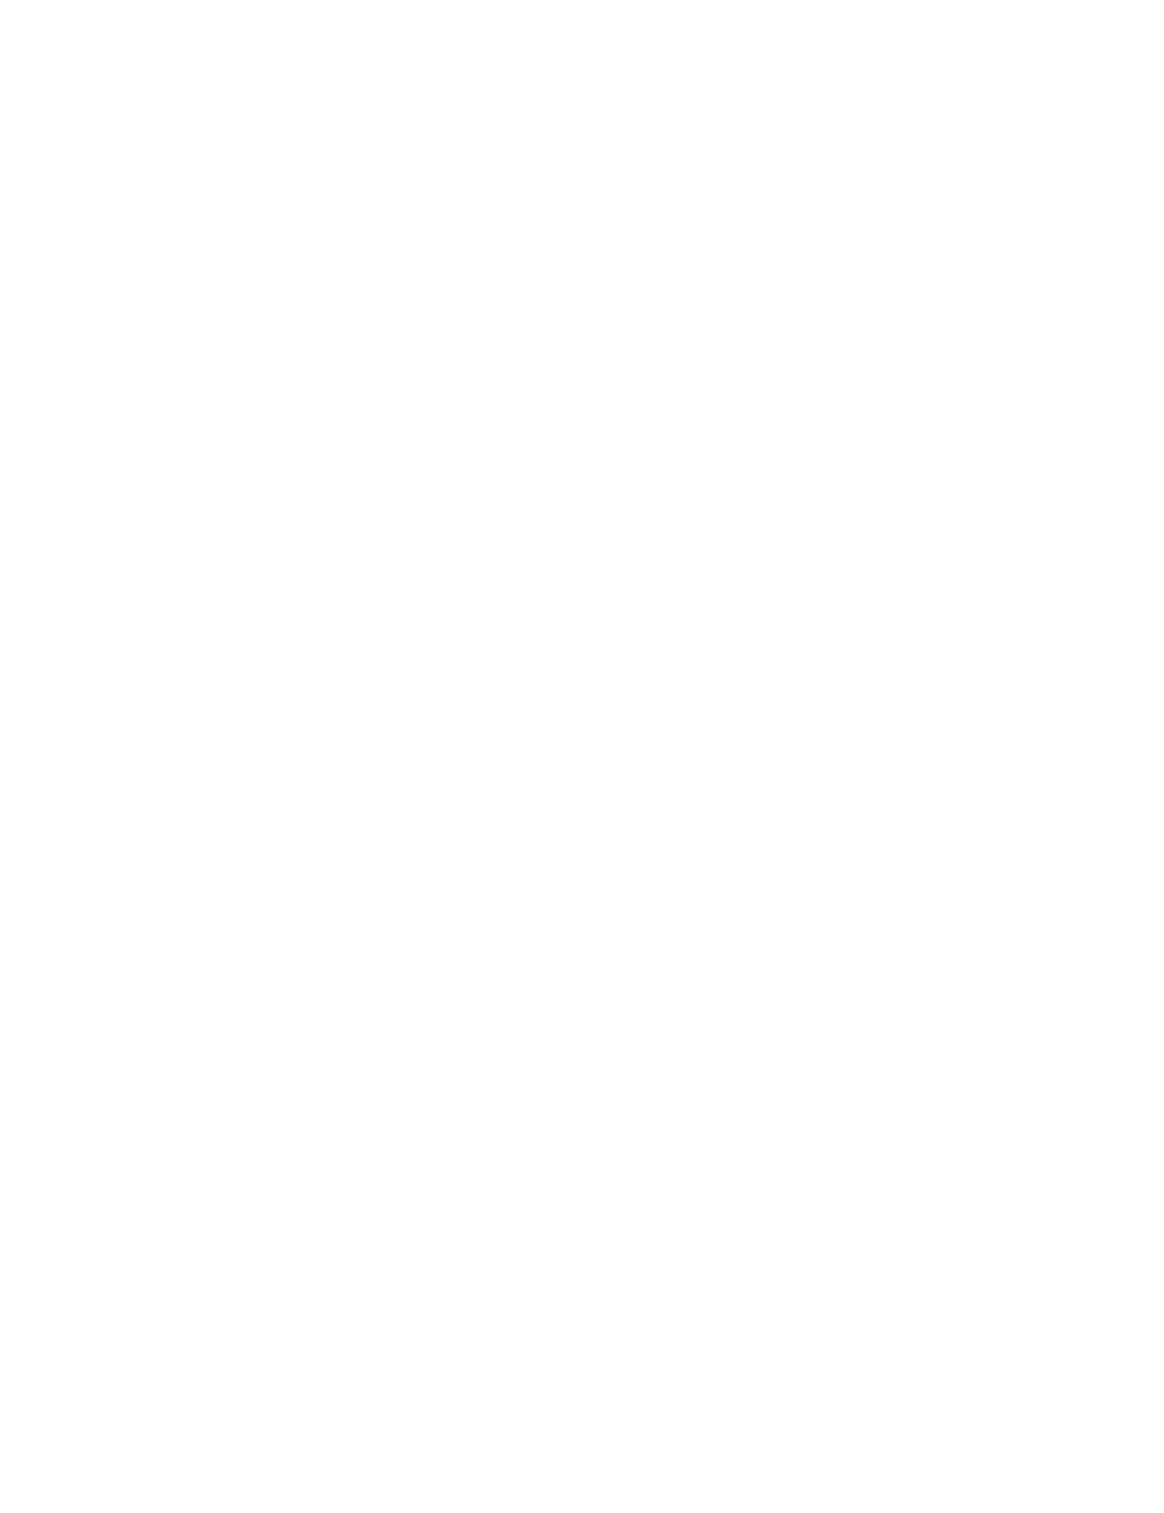 Bezeq logo grand pour les fonds sombres (PNG transparent)